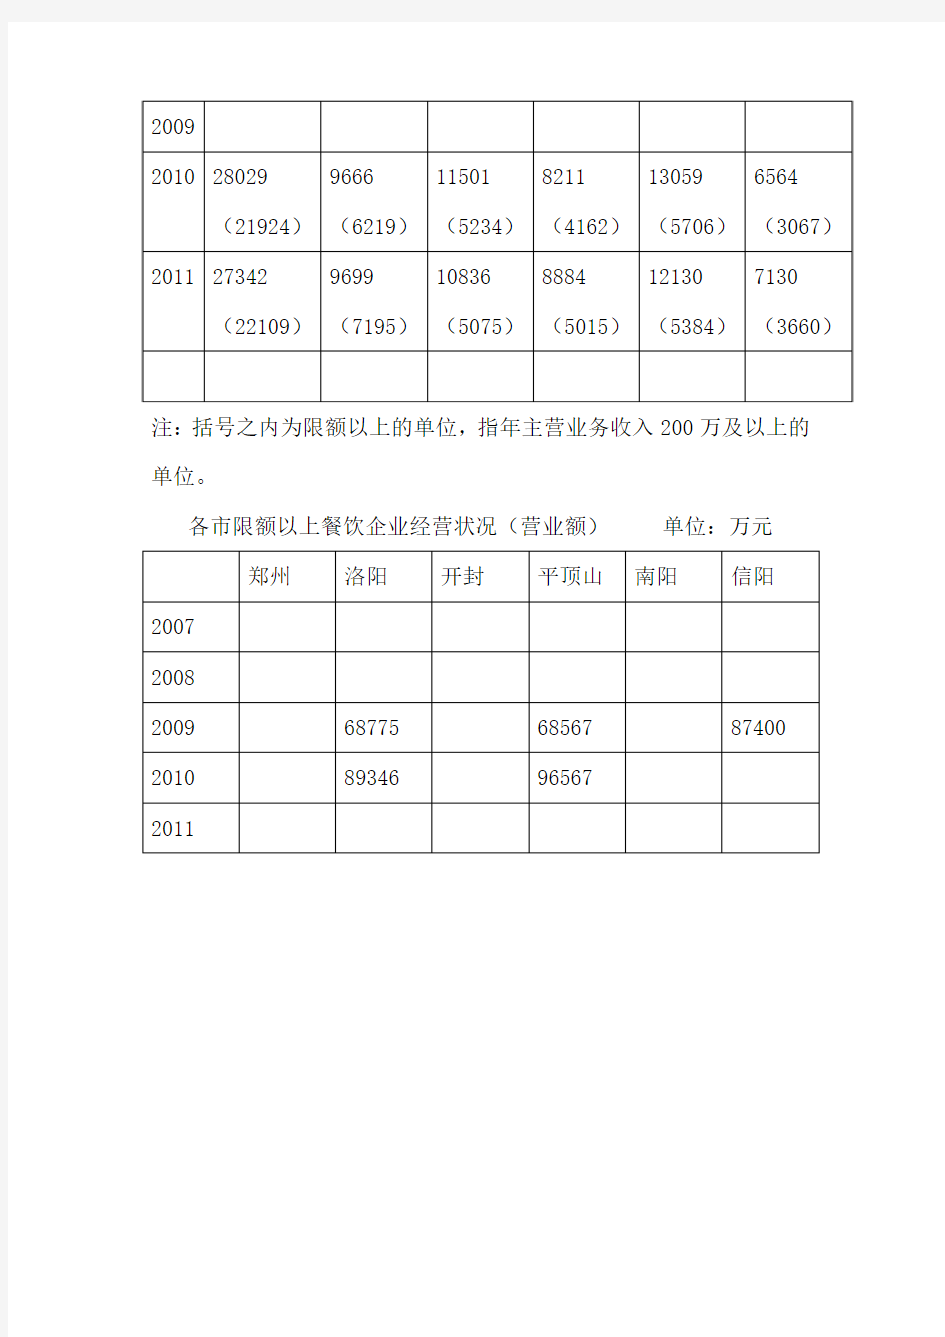 郑州市餐饮业统计数据